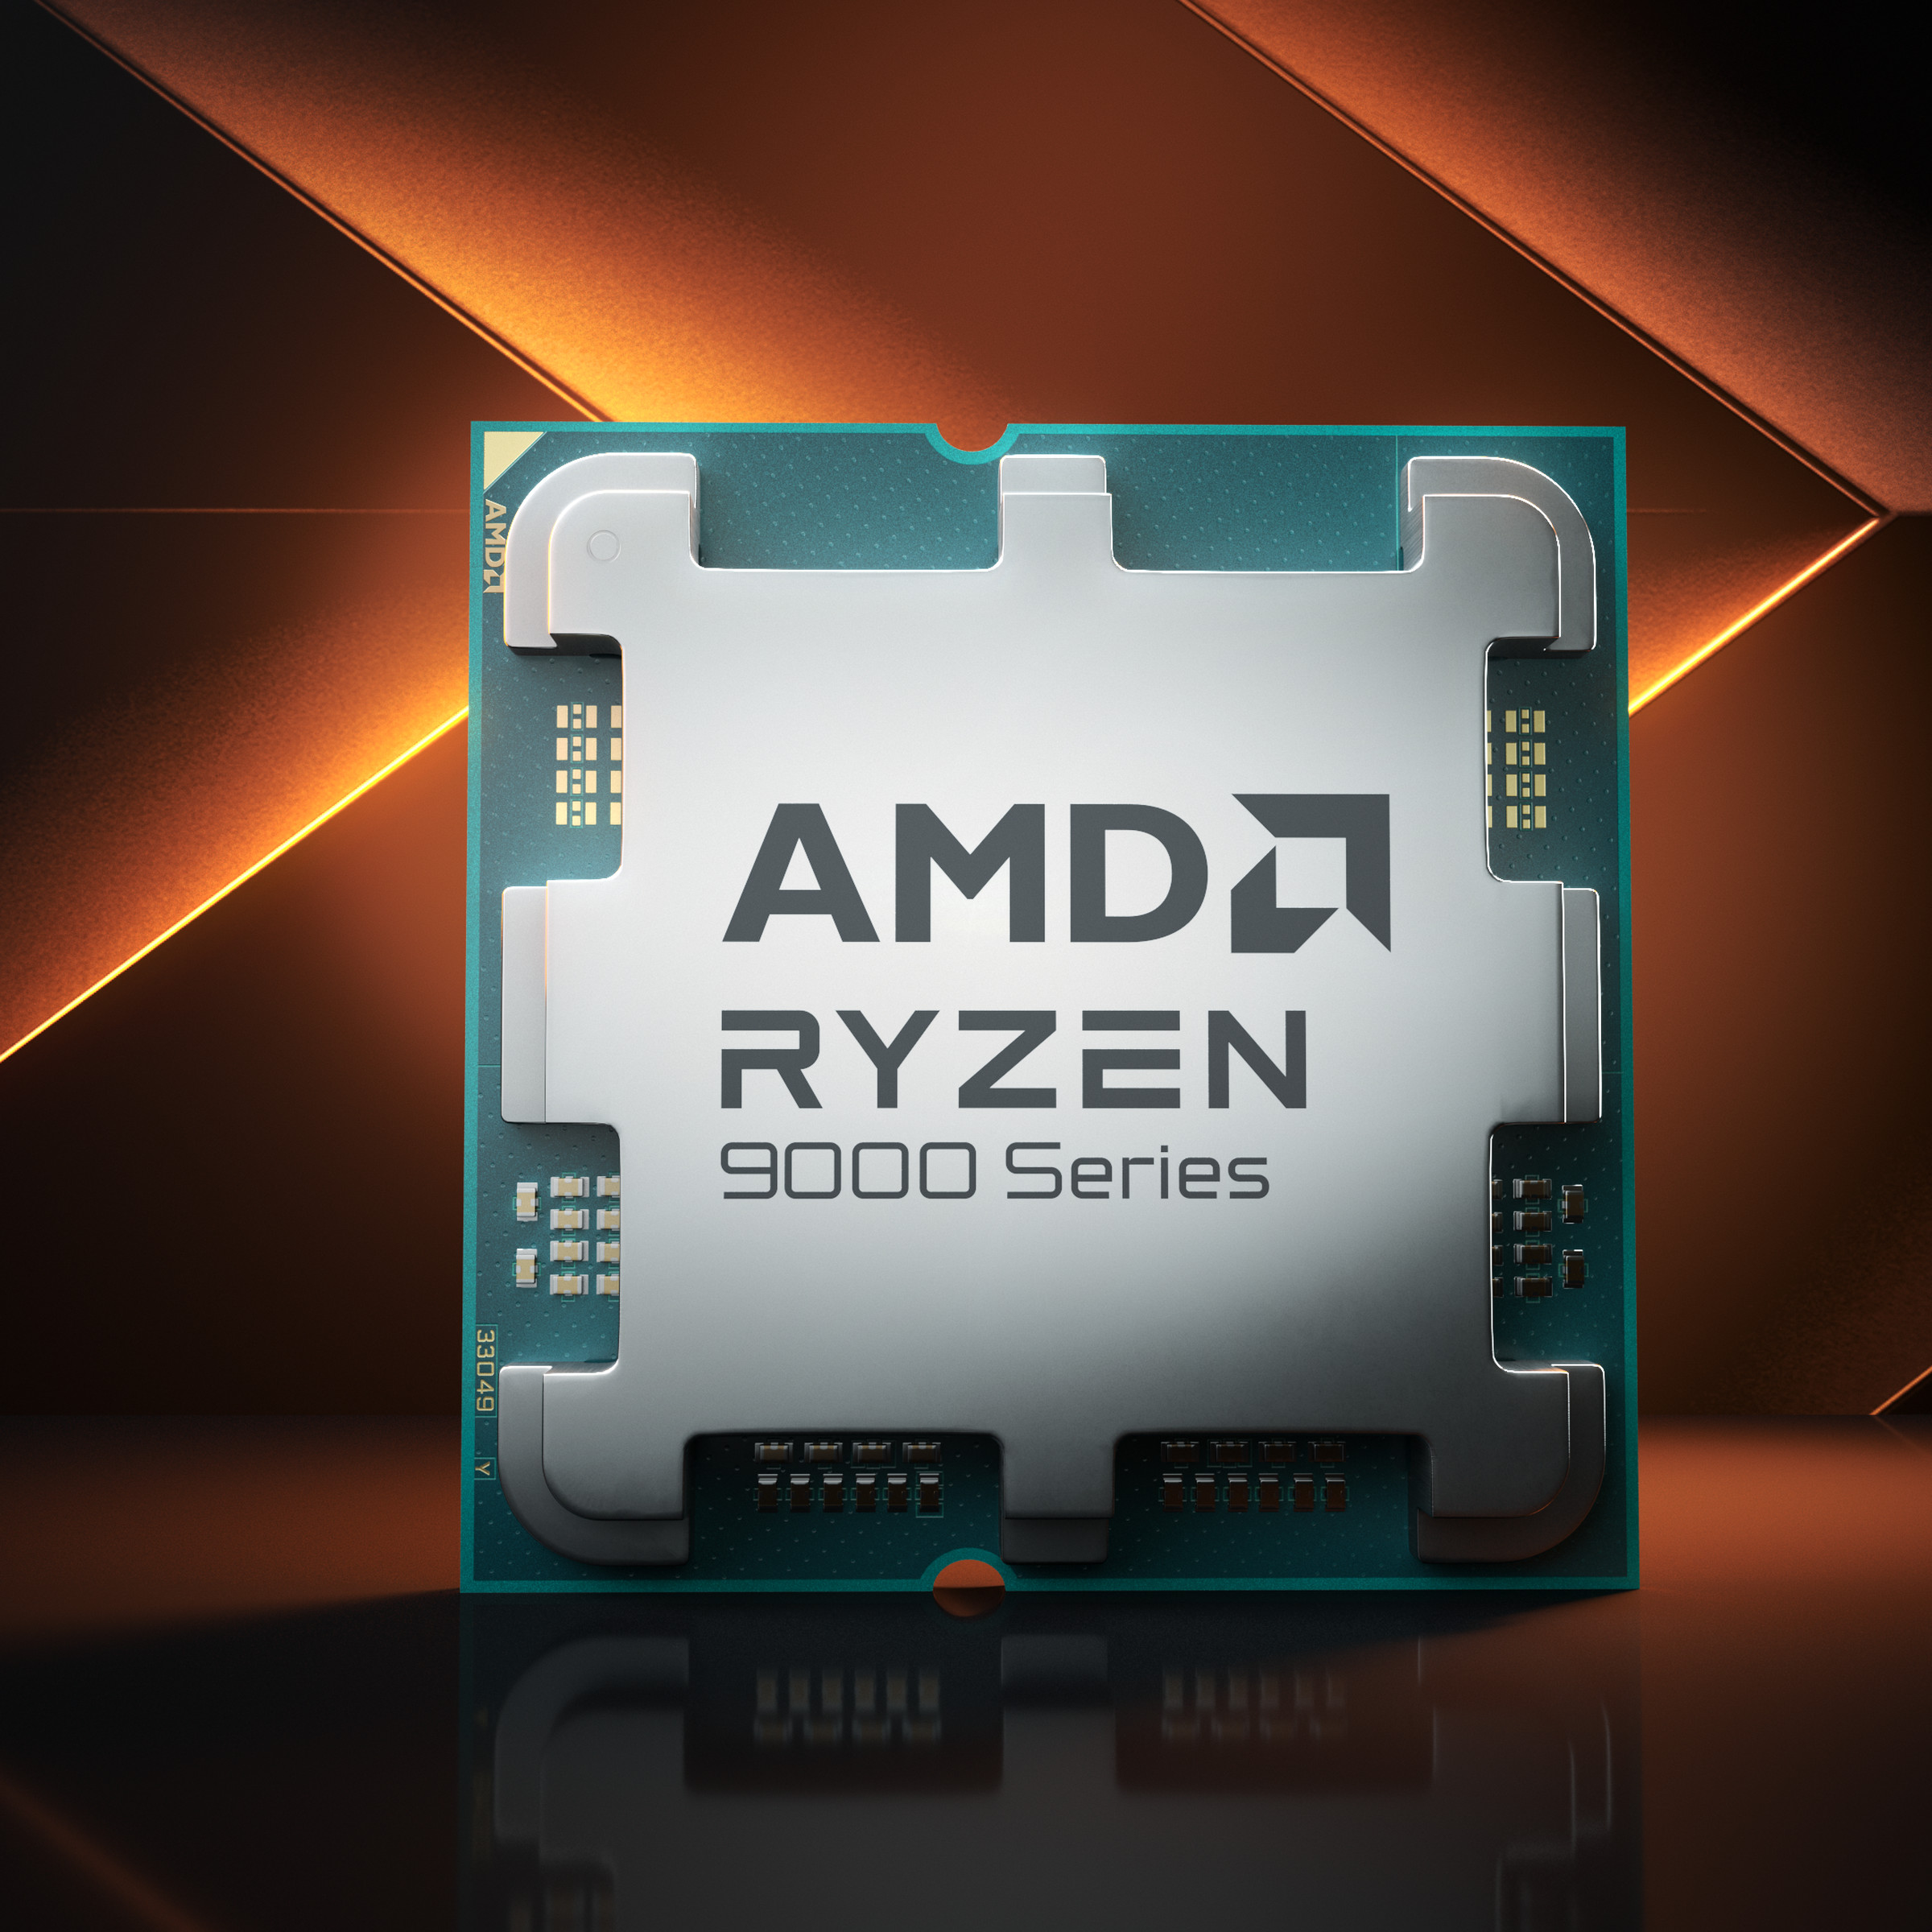 The Ryzen 9 9950X CPU